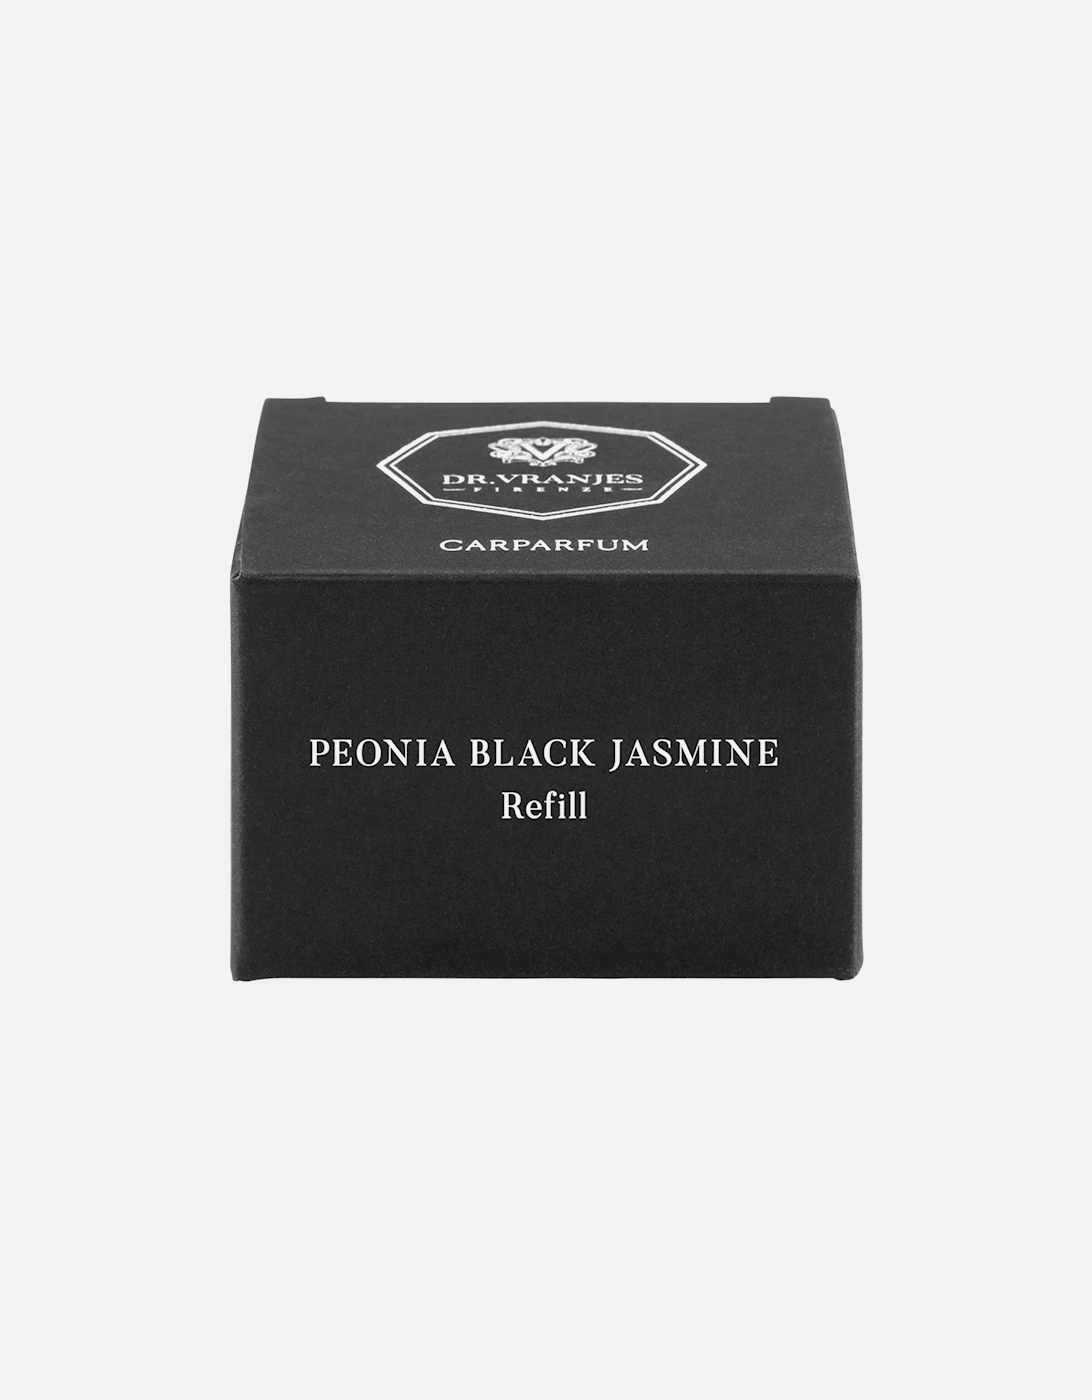 Peonia Black Jasmine Carparfum Scented Refill